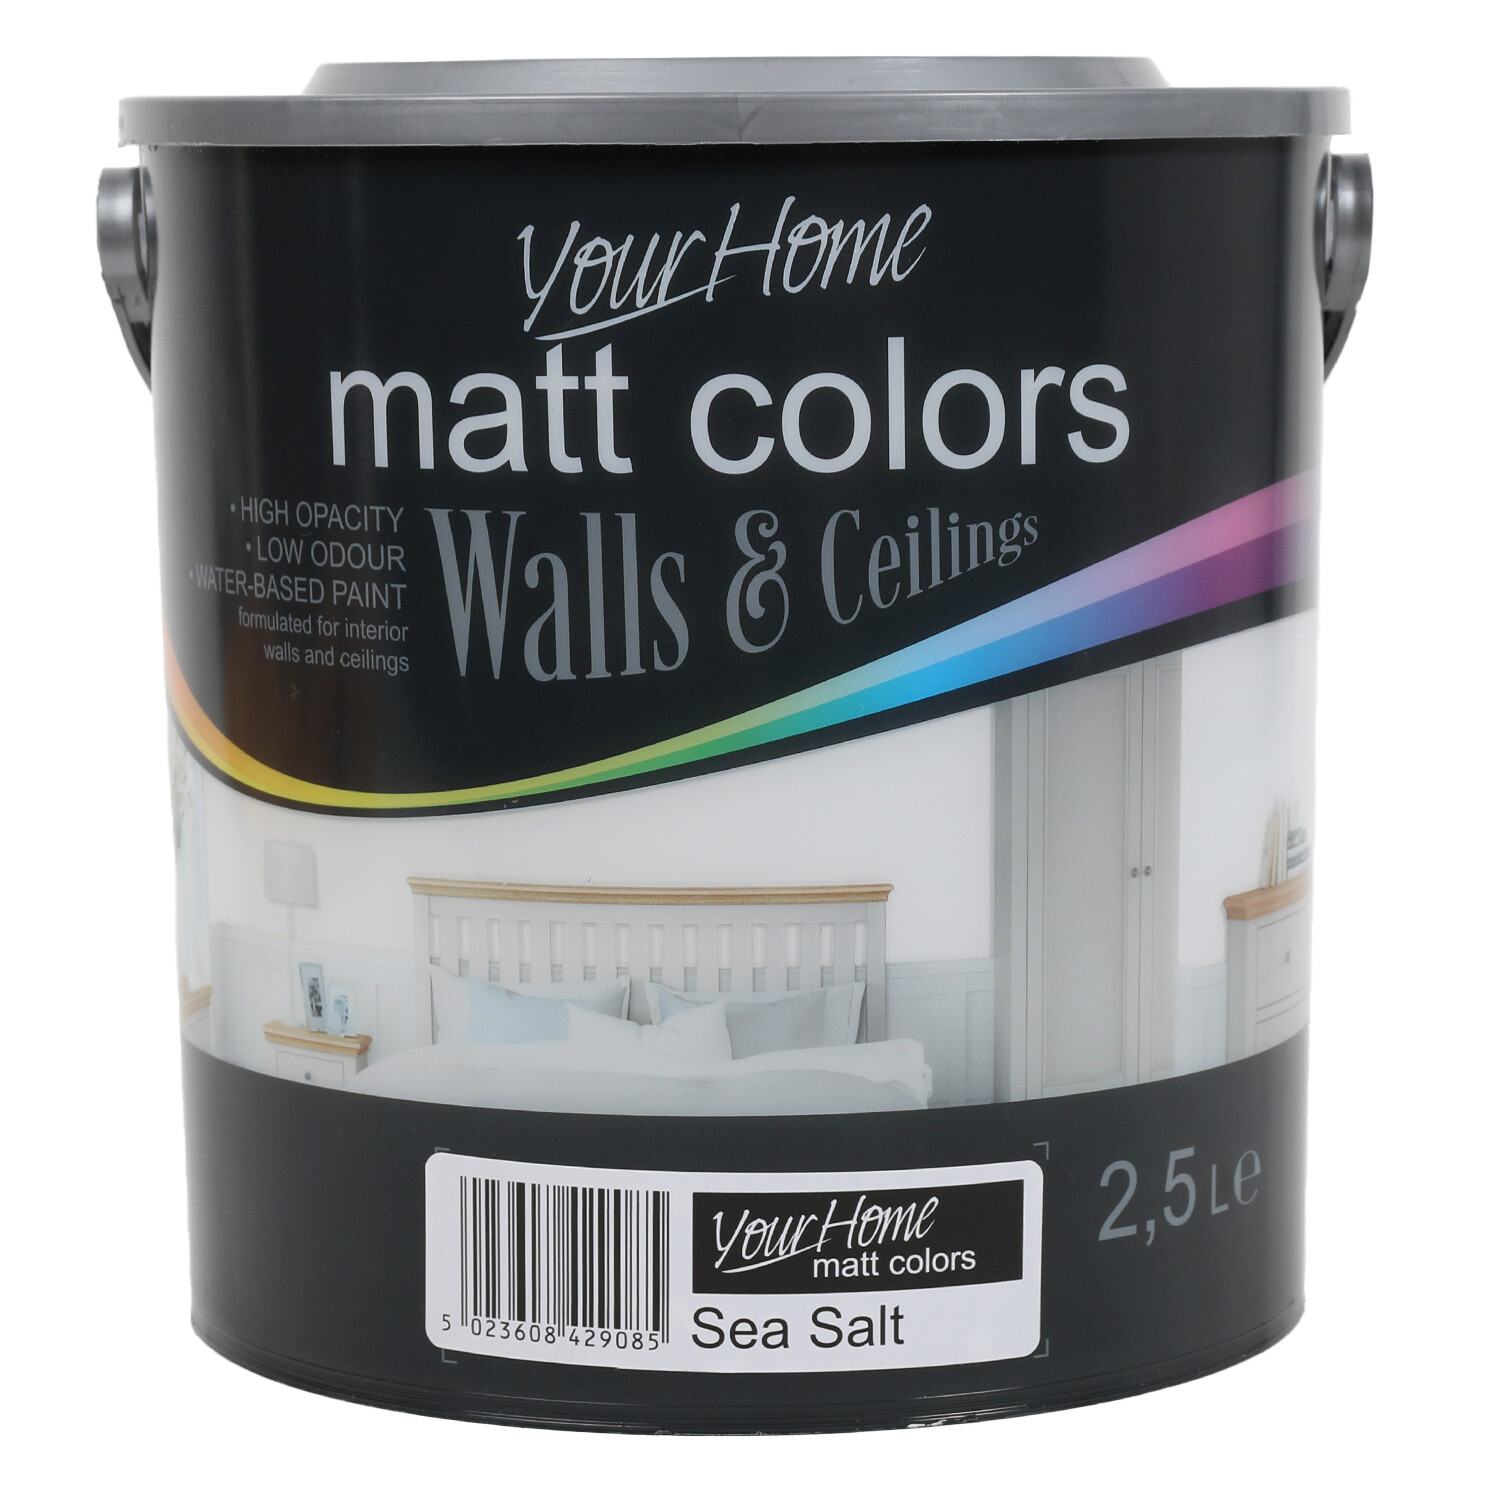 Your Home Walls & Ceilings Sea Salt Matt Emulsion Paint 2.5L Image 1